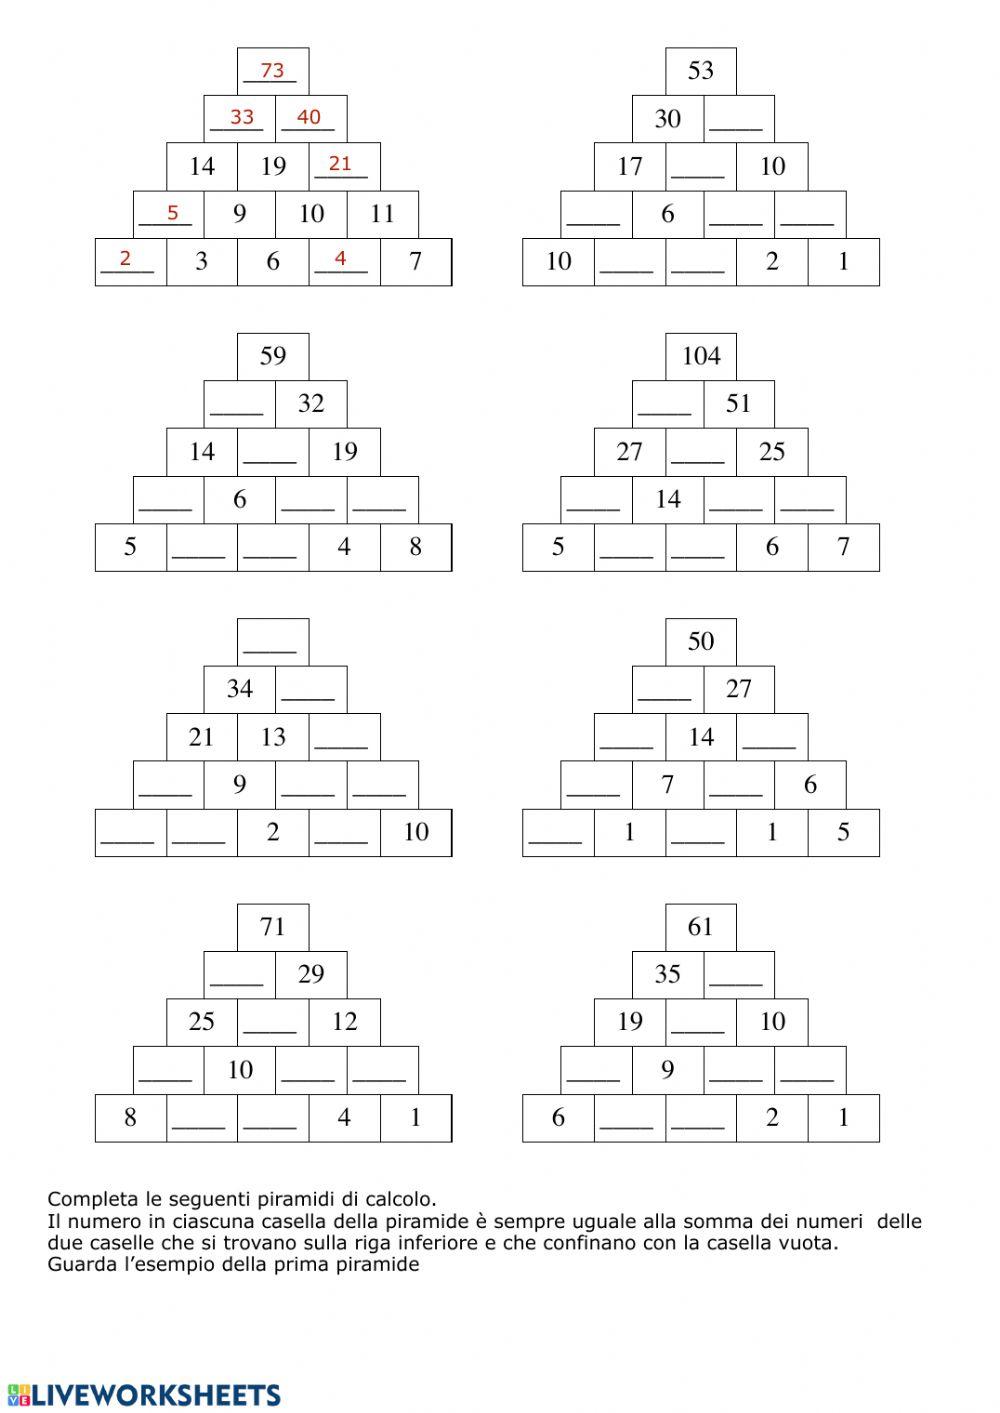 Piramidi di calcolo